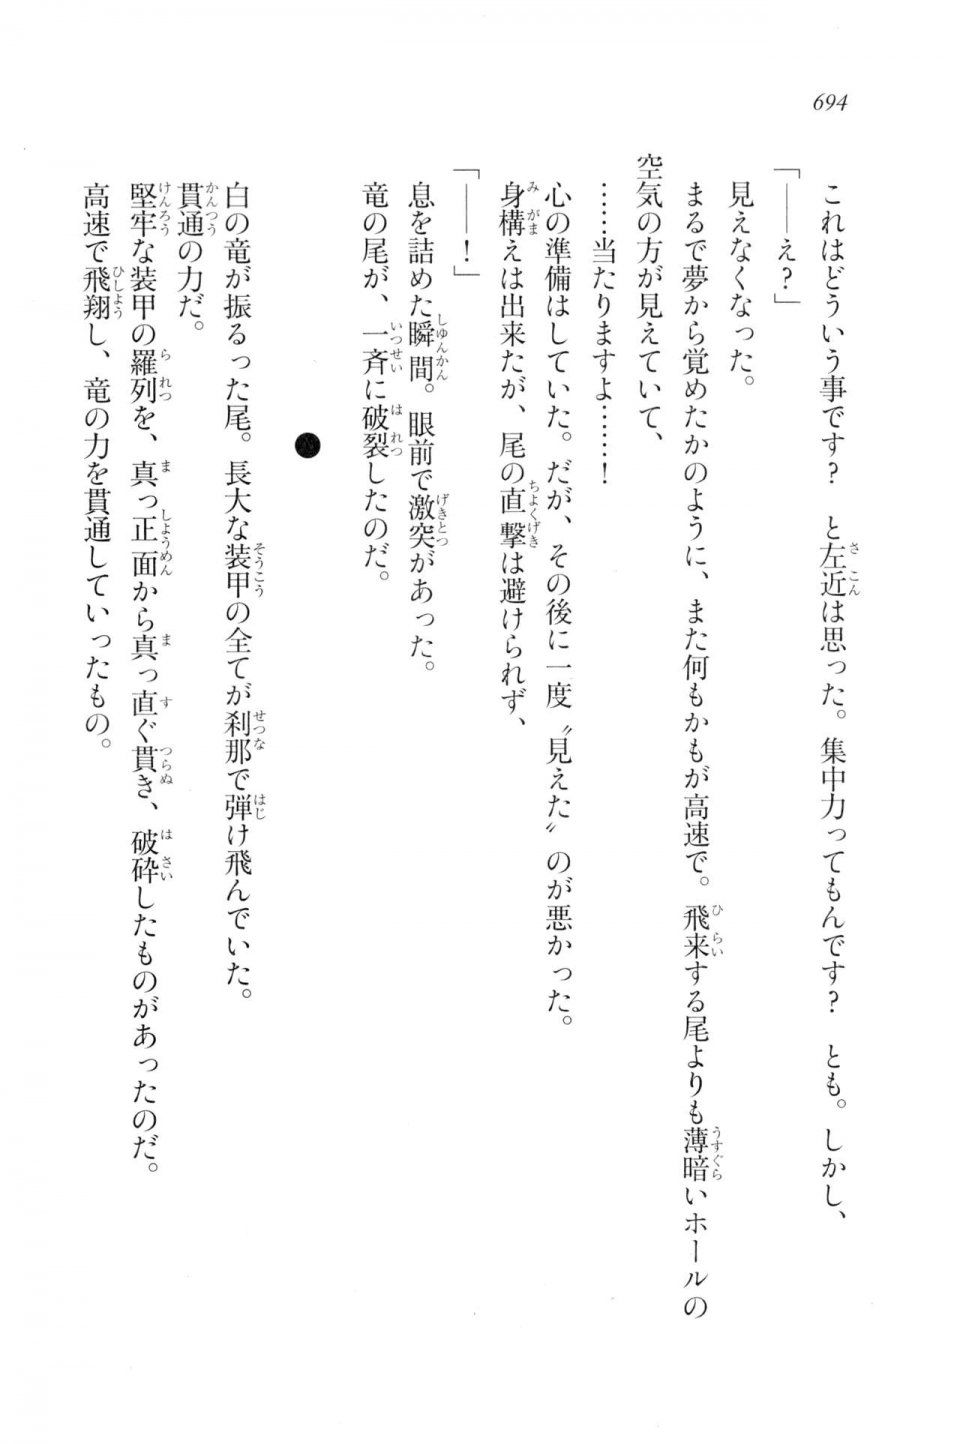 Kyoukai Senjou no Horizon LN Vol 20(8B) - Photo #694